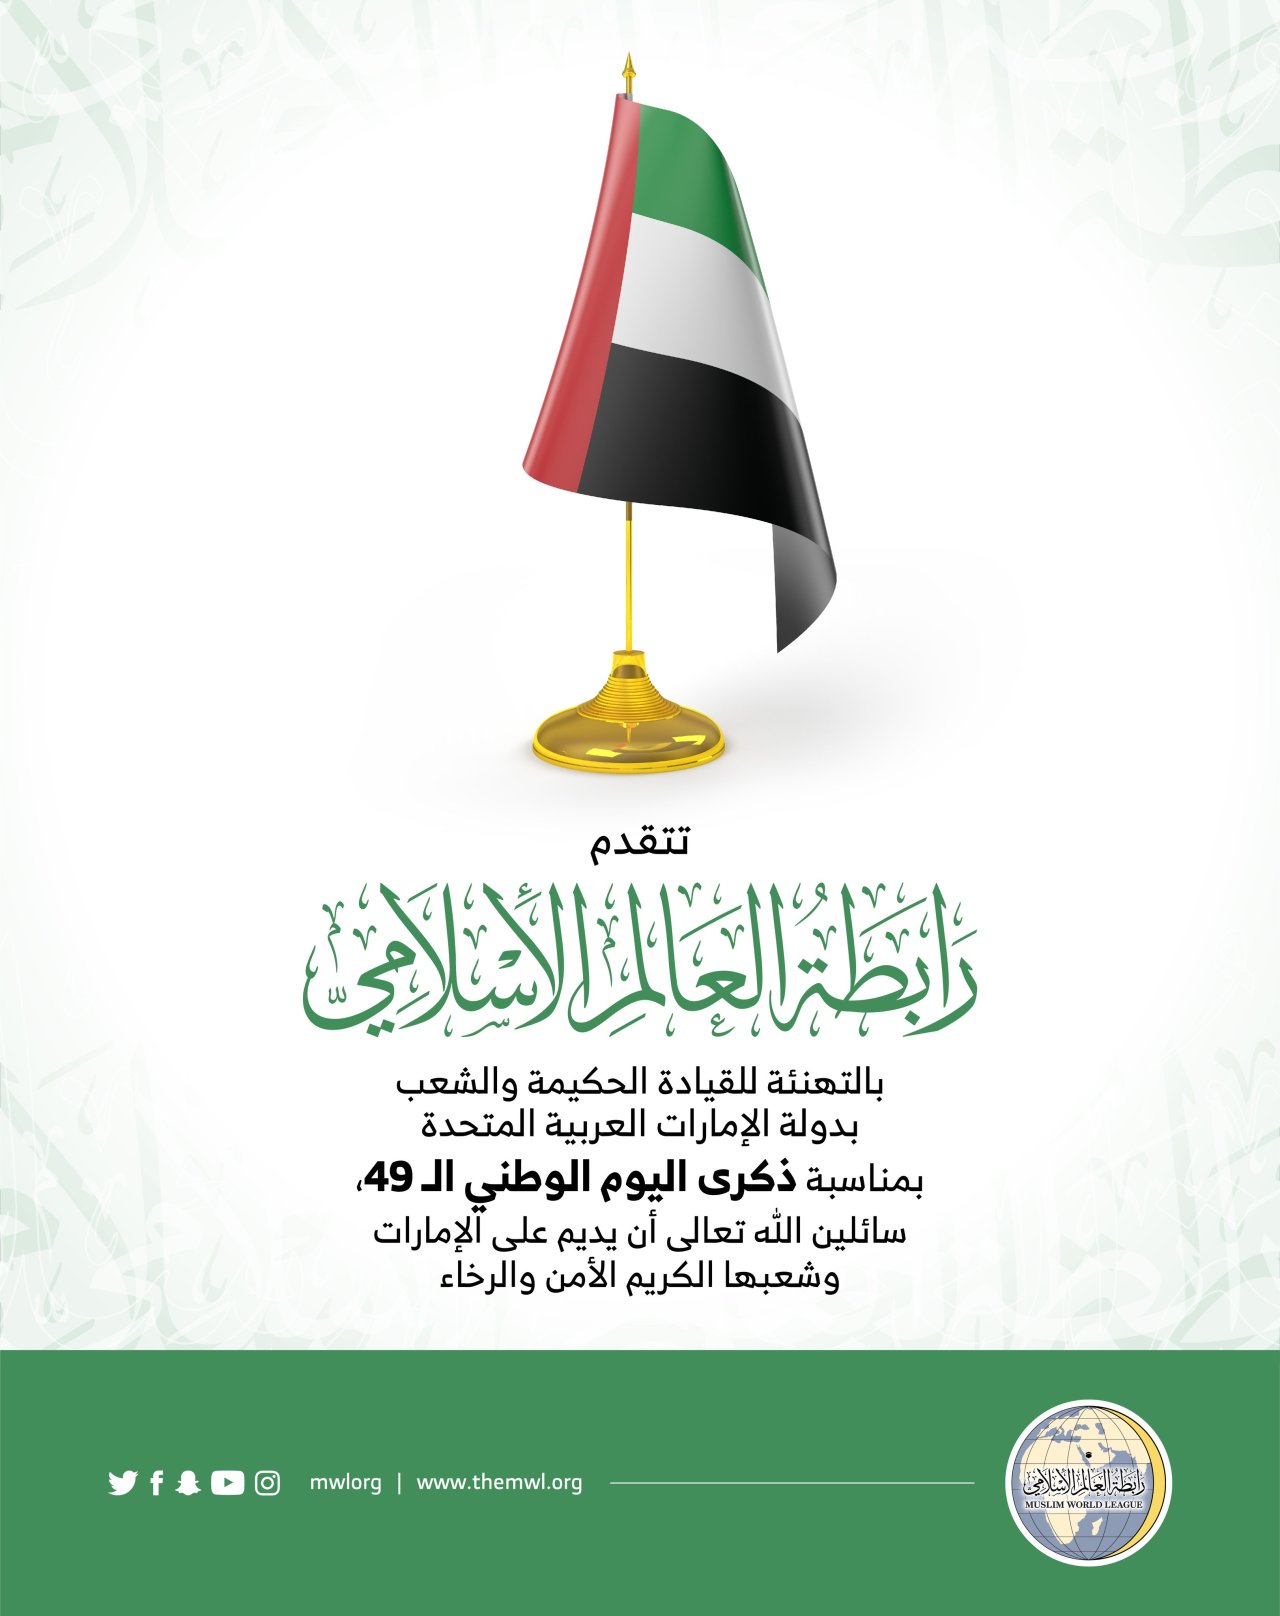 تهنئة رابطة العالم الإسلامي‬⁩ لدولة الإمارات العربية المتحدة‬⁩، بذكرى  اليوم الوطني الإماراتي49‬⁩